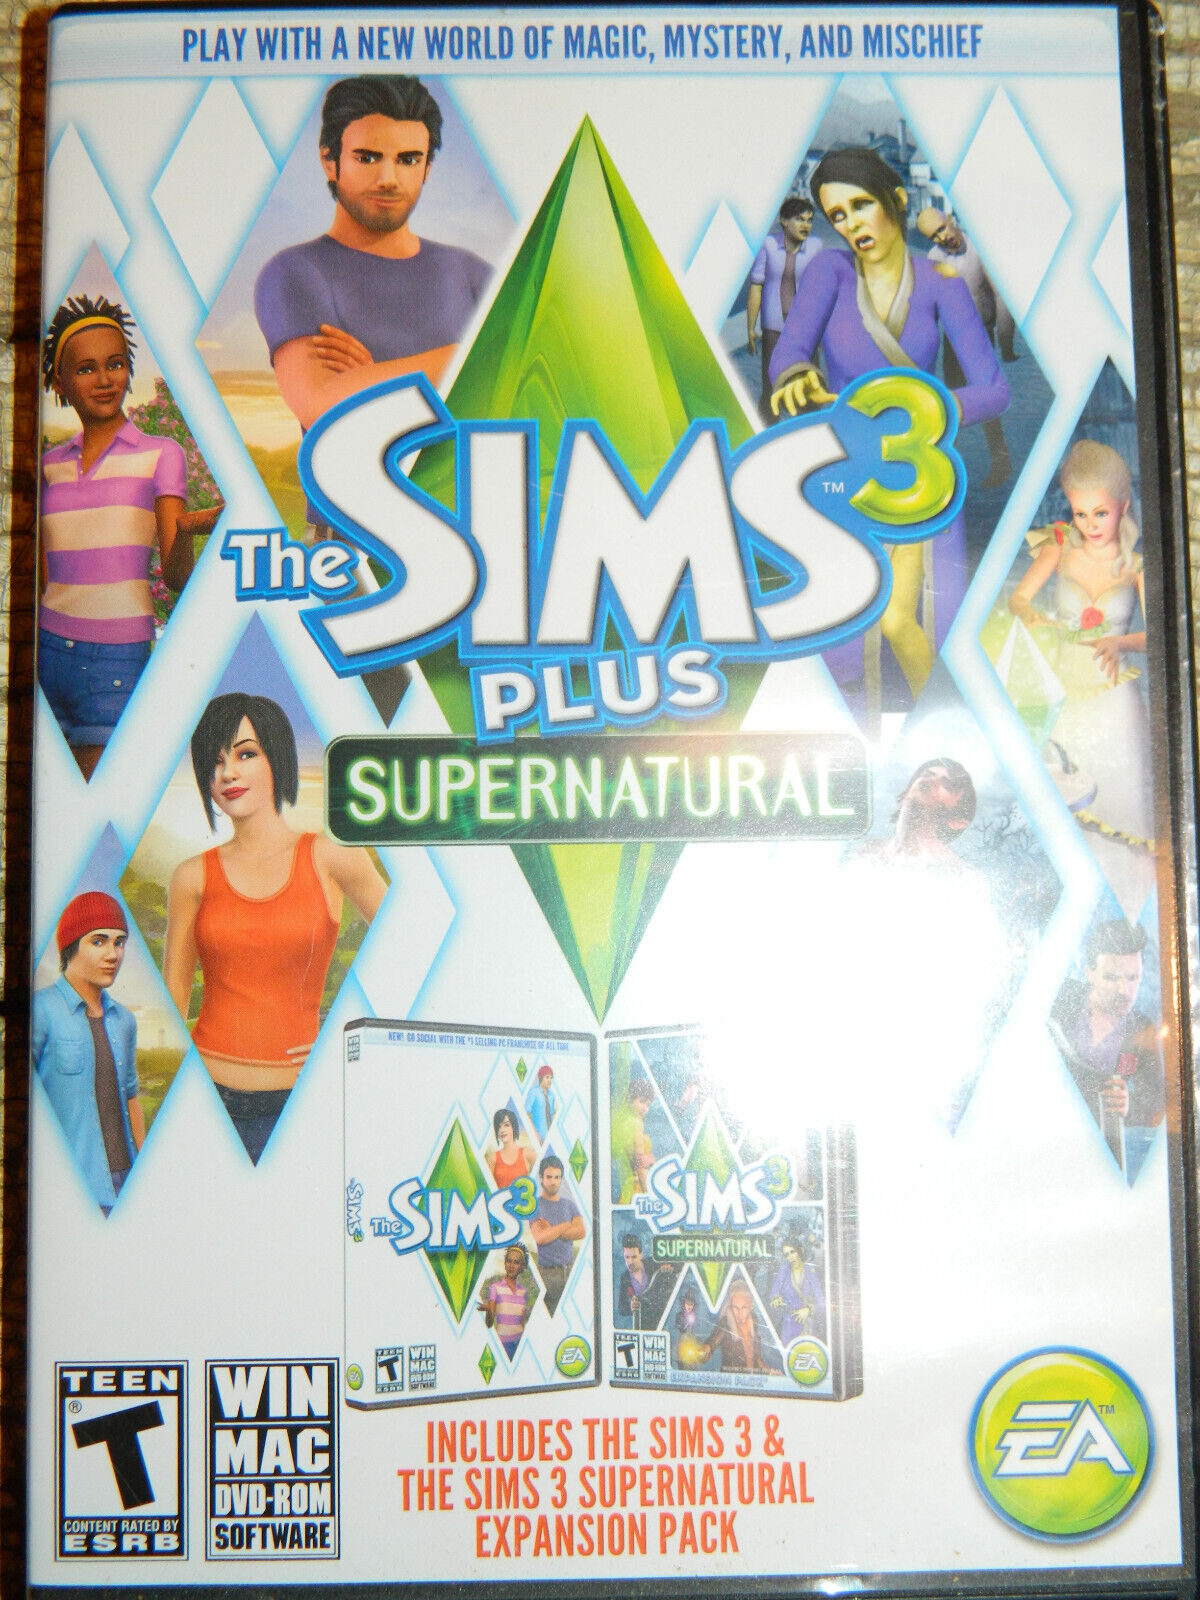 Sims 3 Plus Supernatural (PC, WIN MAC DVD-ROM)